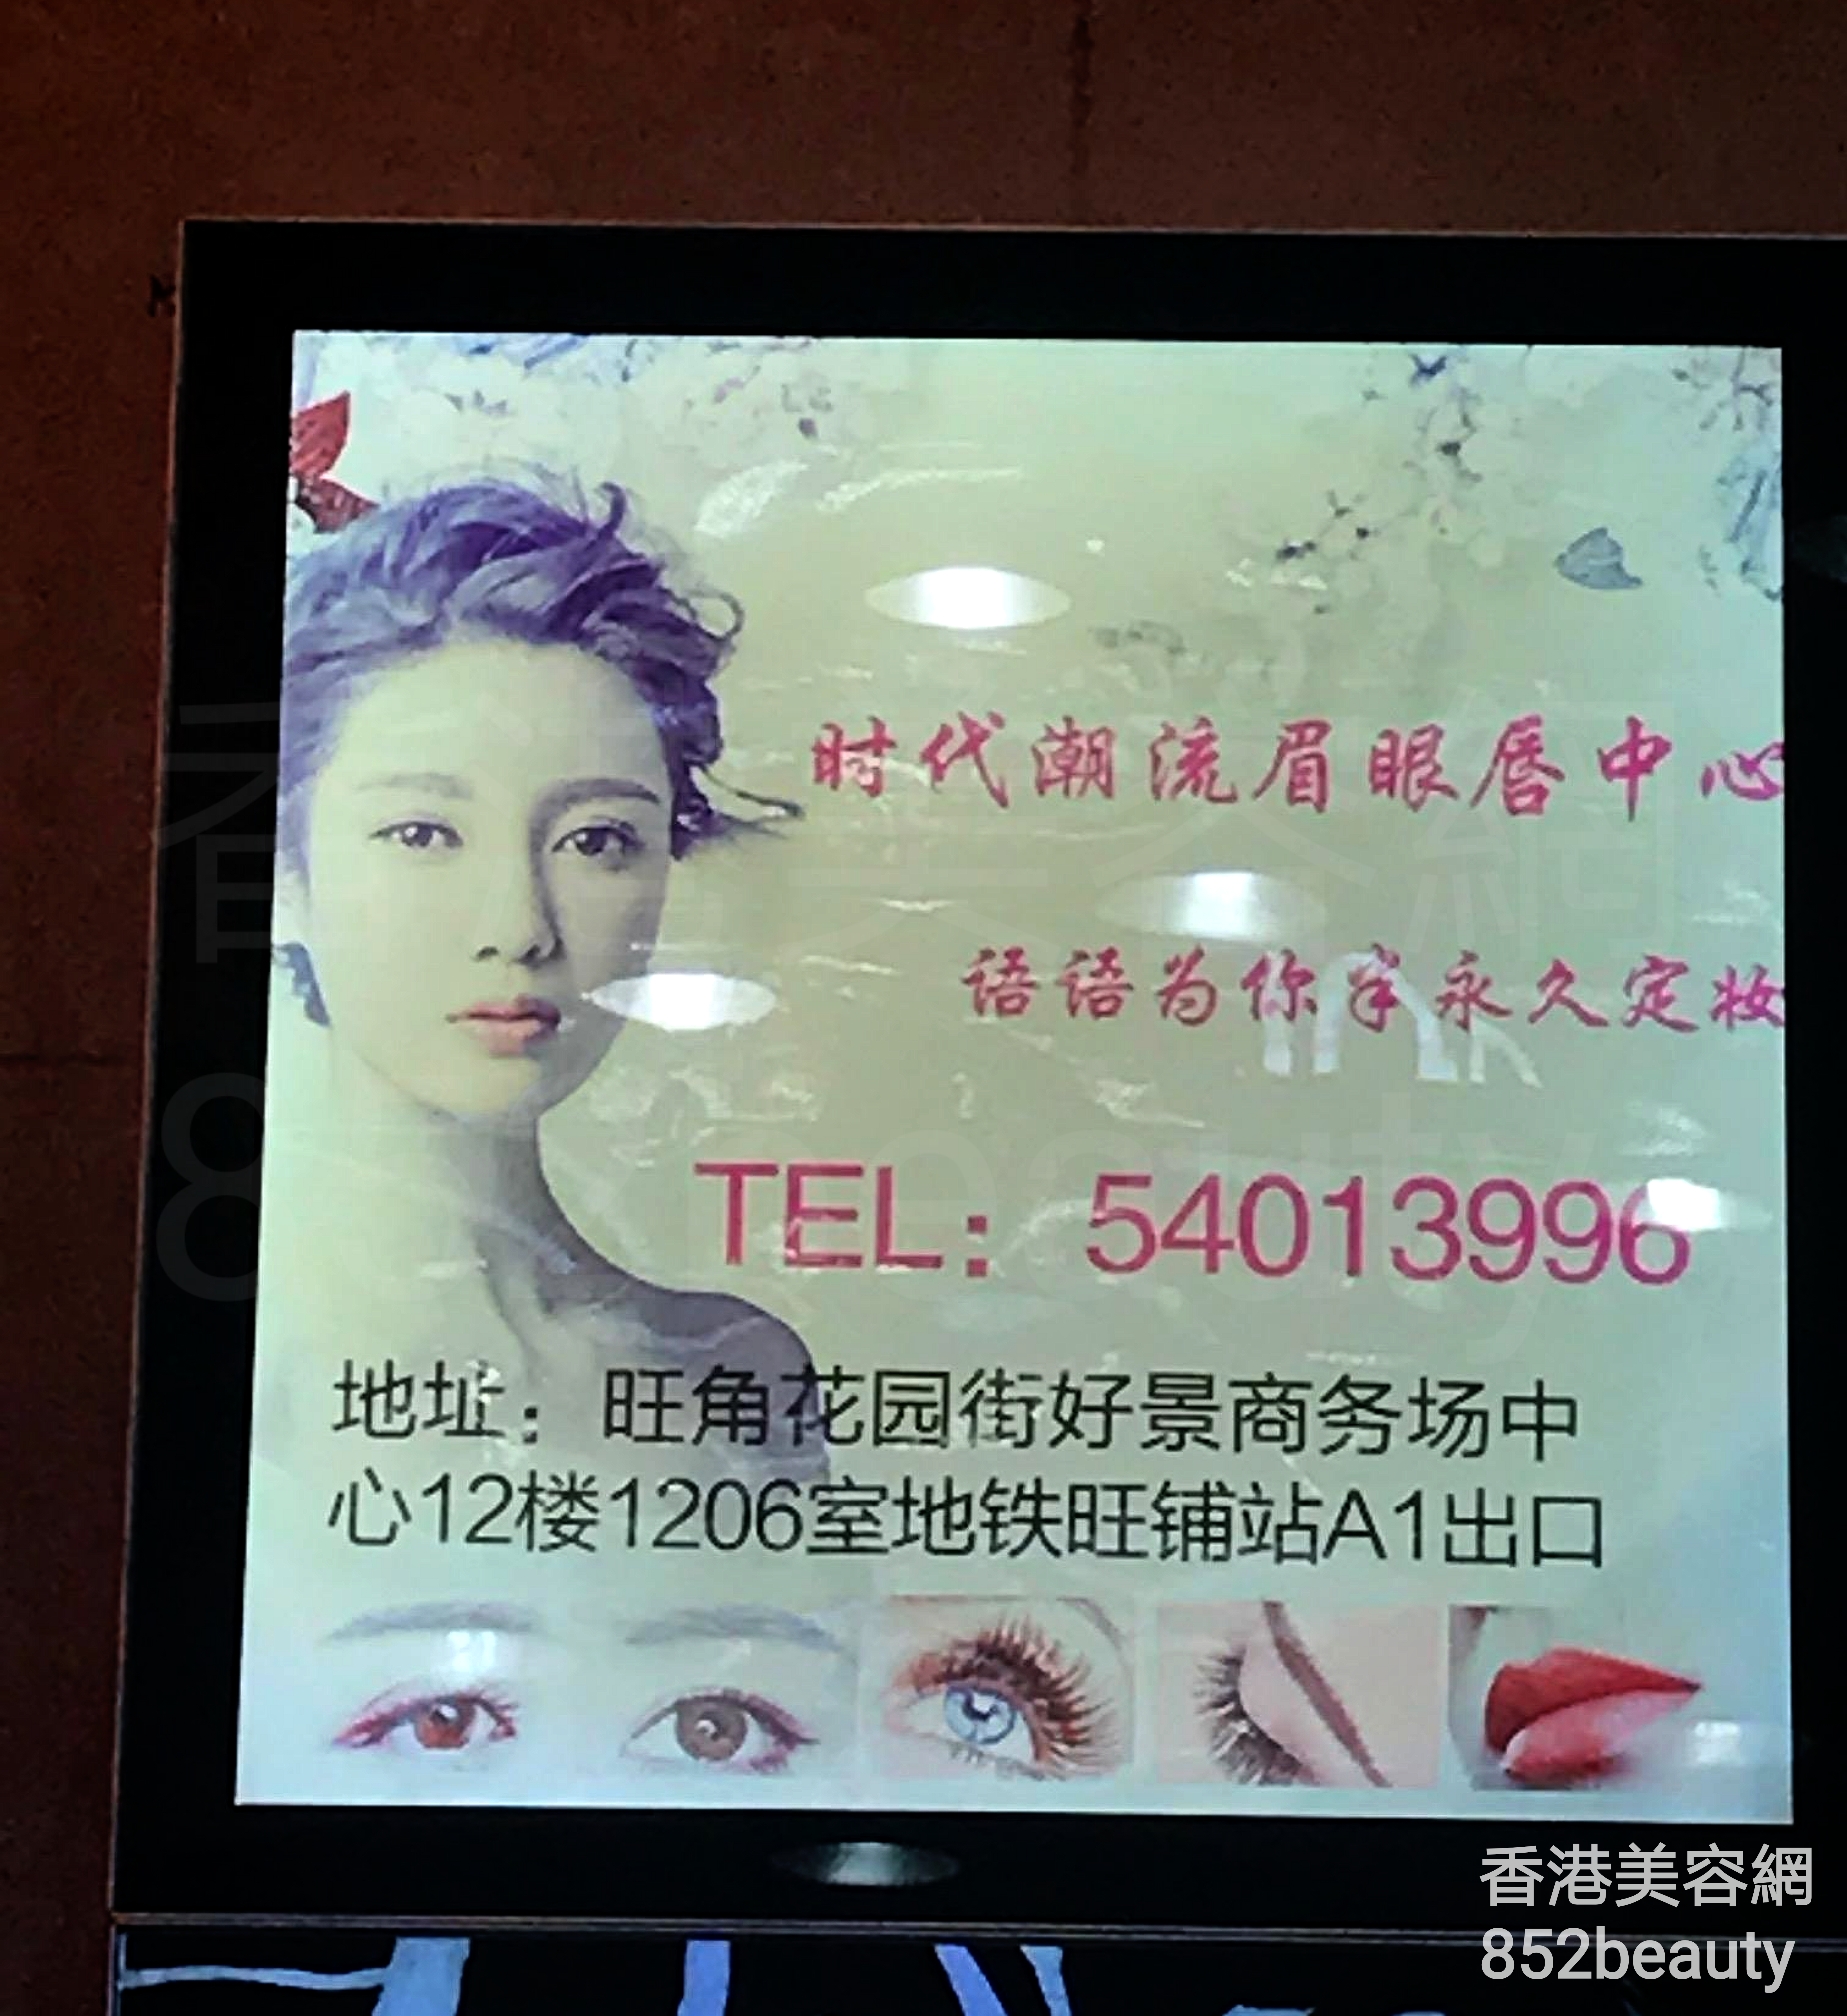 香港美容網 Hong Kong Beauty Salon 美容院 / 美容師: 時代潮流眉眼唇中心